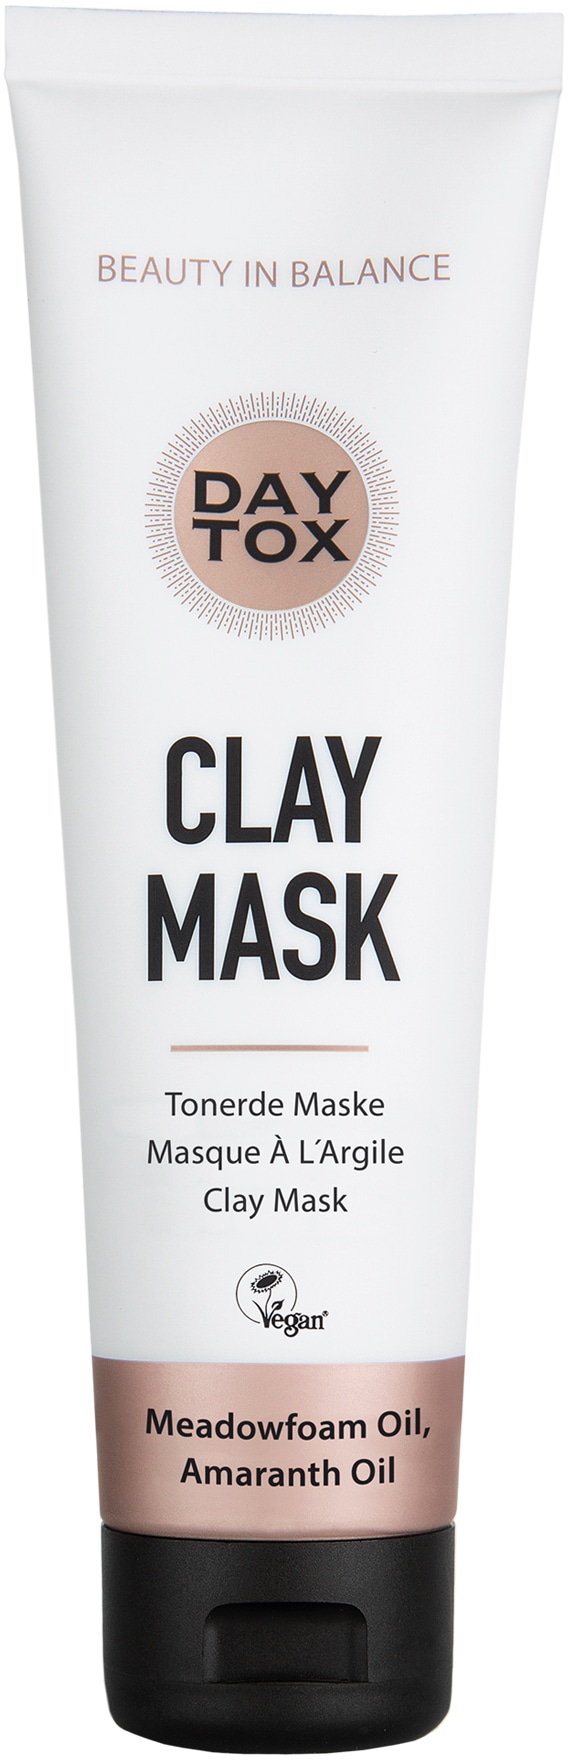 kaufen - Gesichtsmaske Mask« Clay DAYTOX OTTO Weihnachts-Shop »Daytox